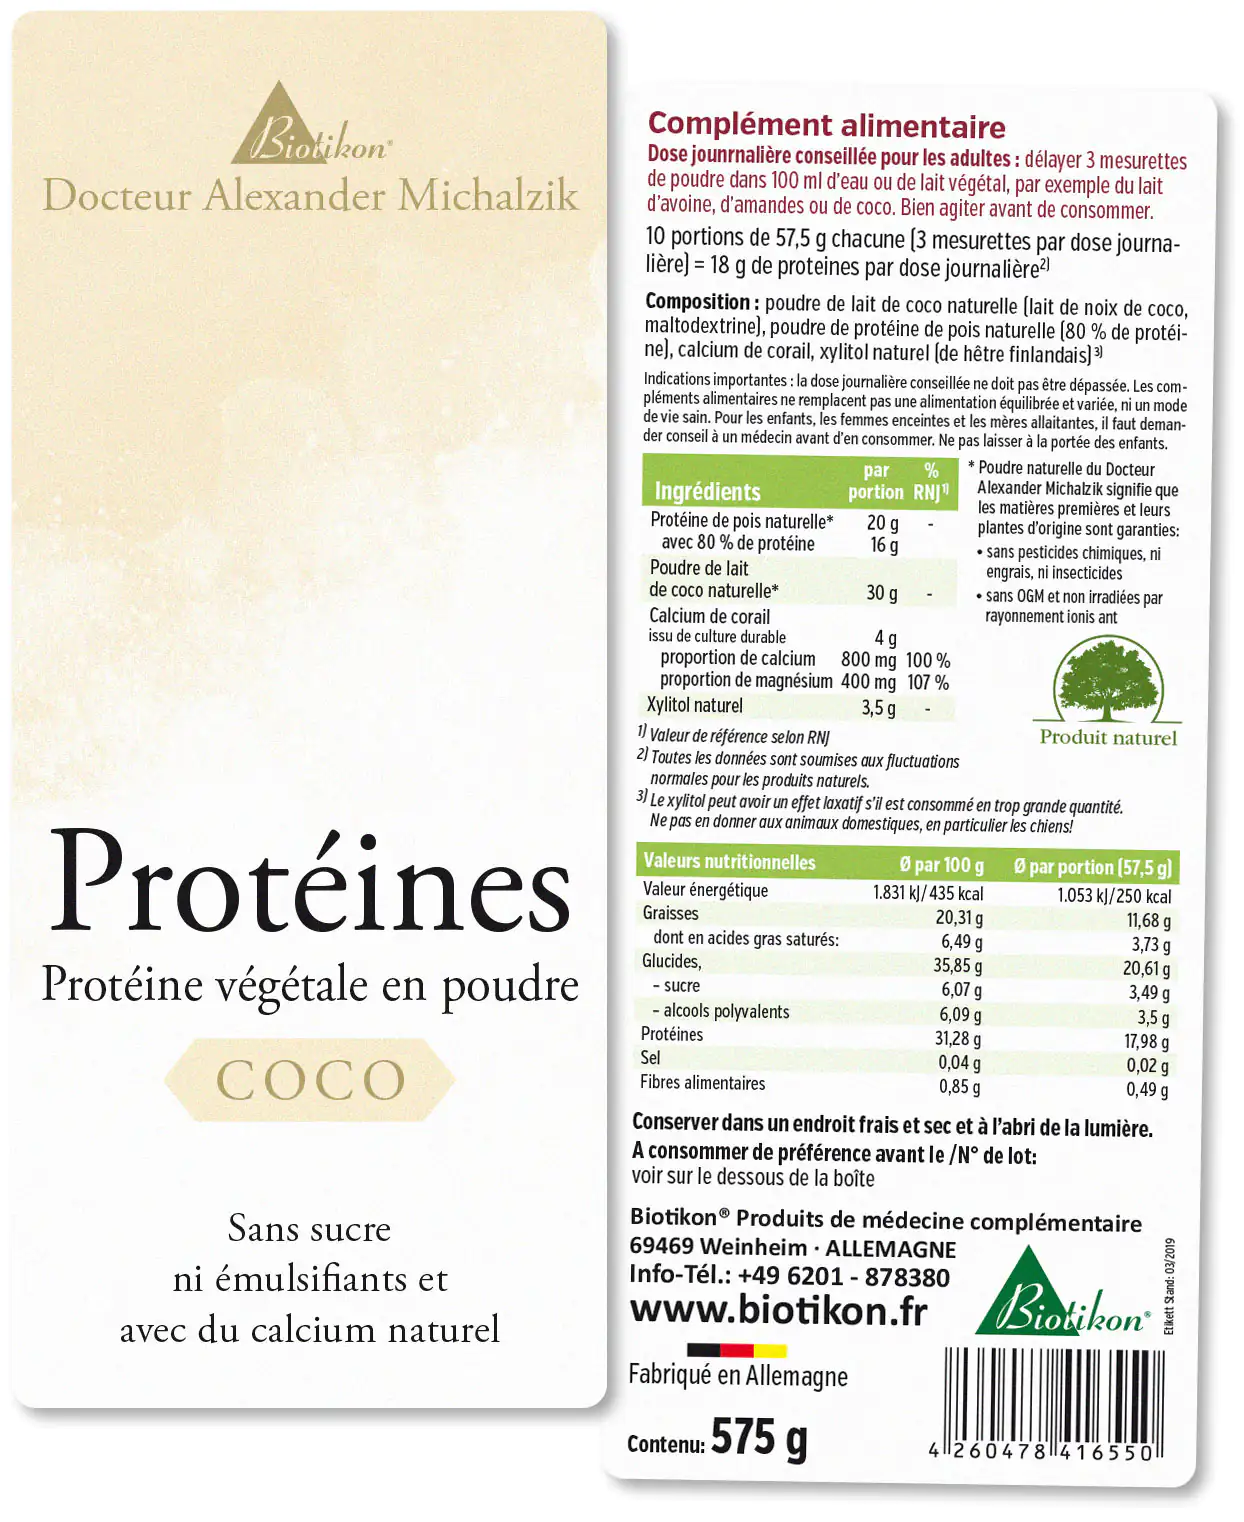 Protéines - en lot de 3, 2x Coco + Aronia